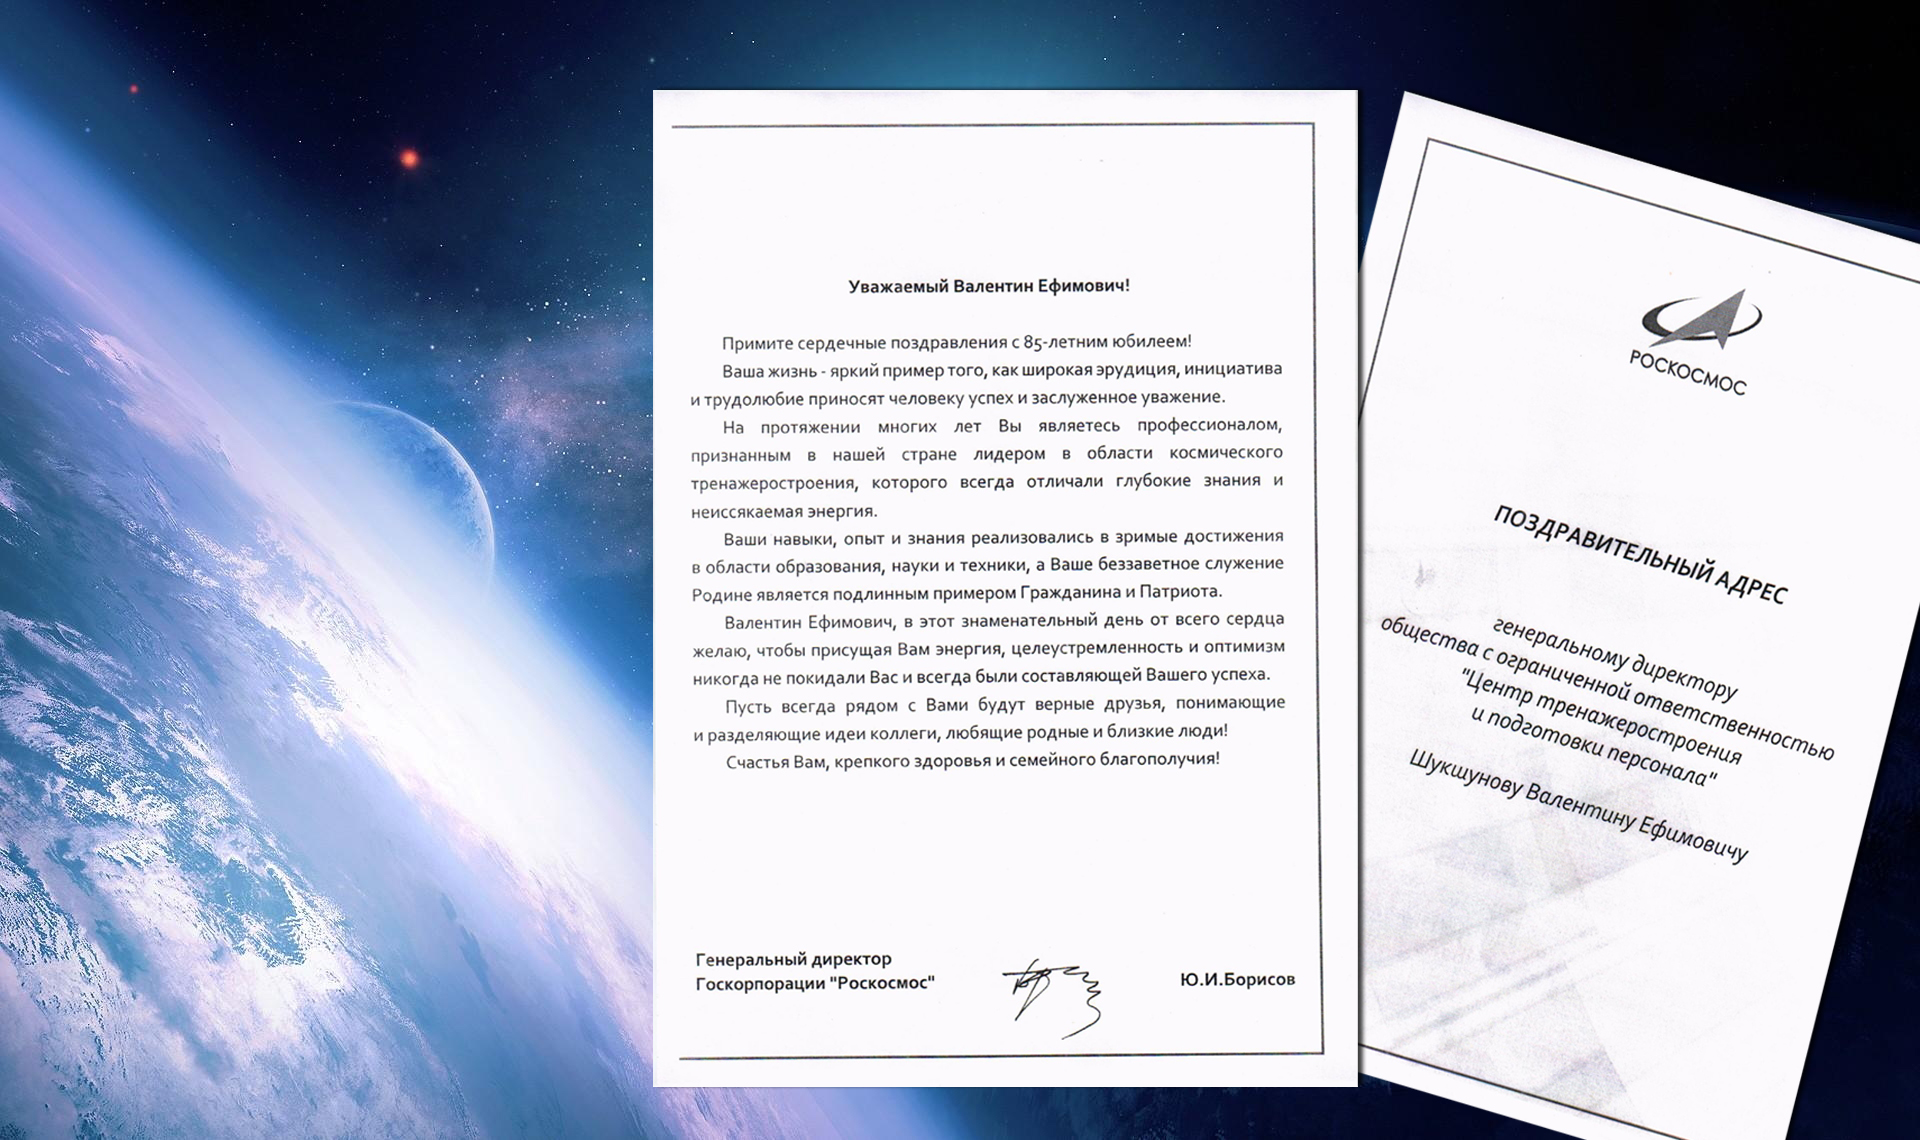 Поздравление ЦТиПП от Роскосмоса